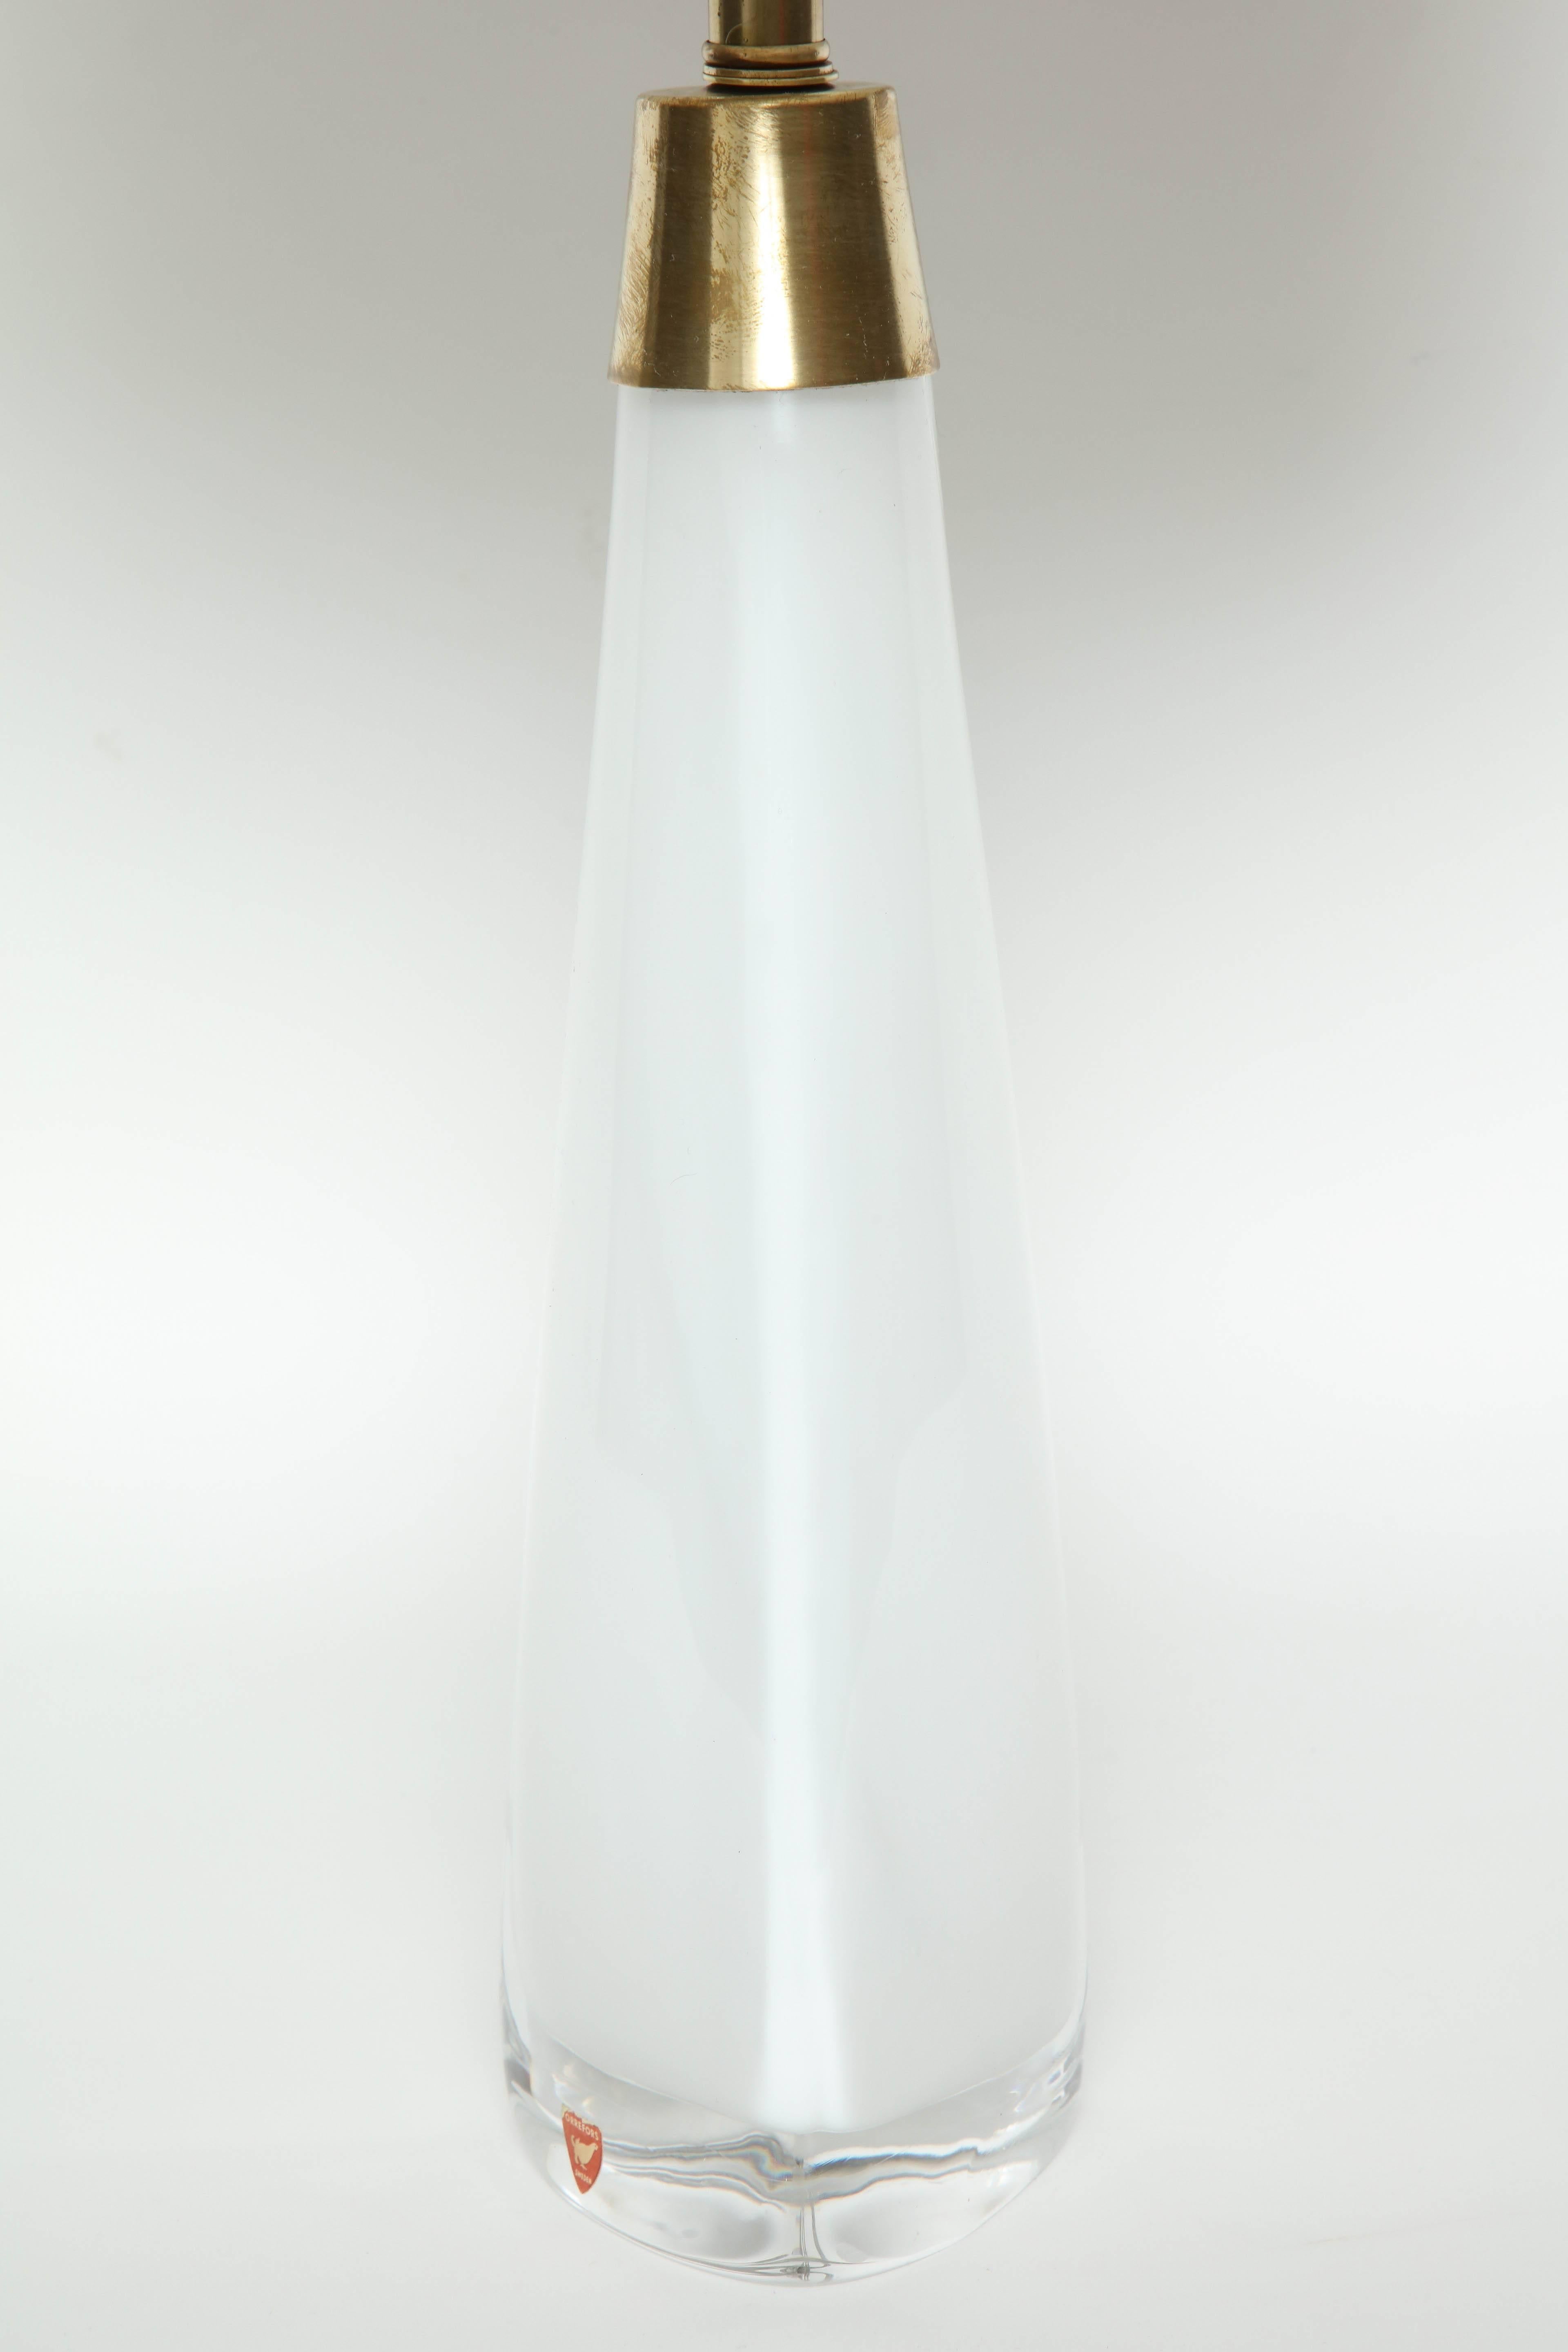 20th Century Nils Landberg for Orrefors White Crystal Lamps